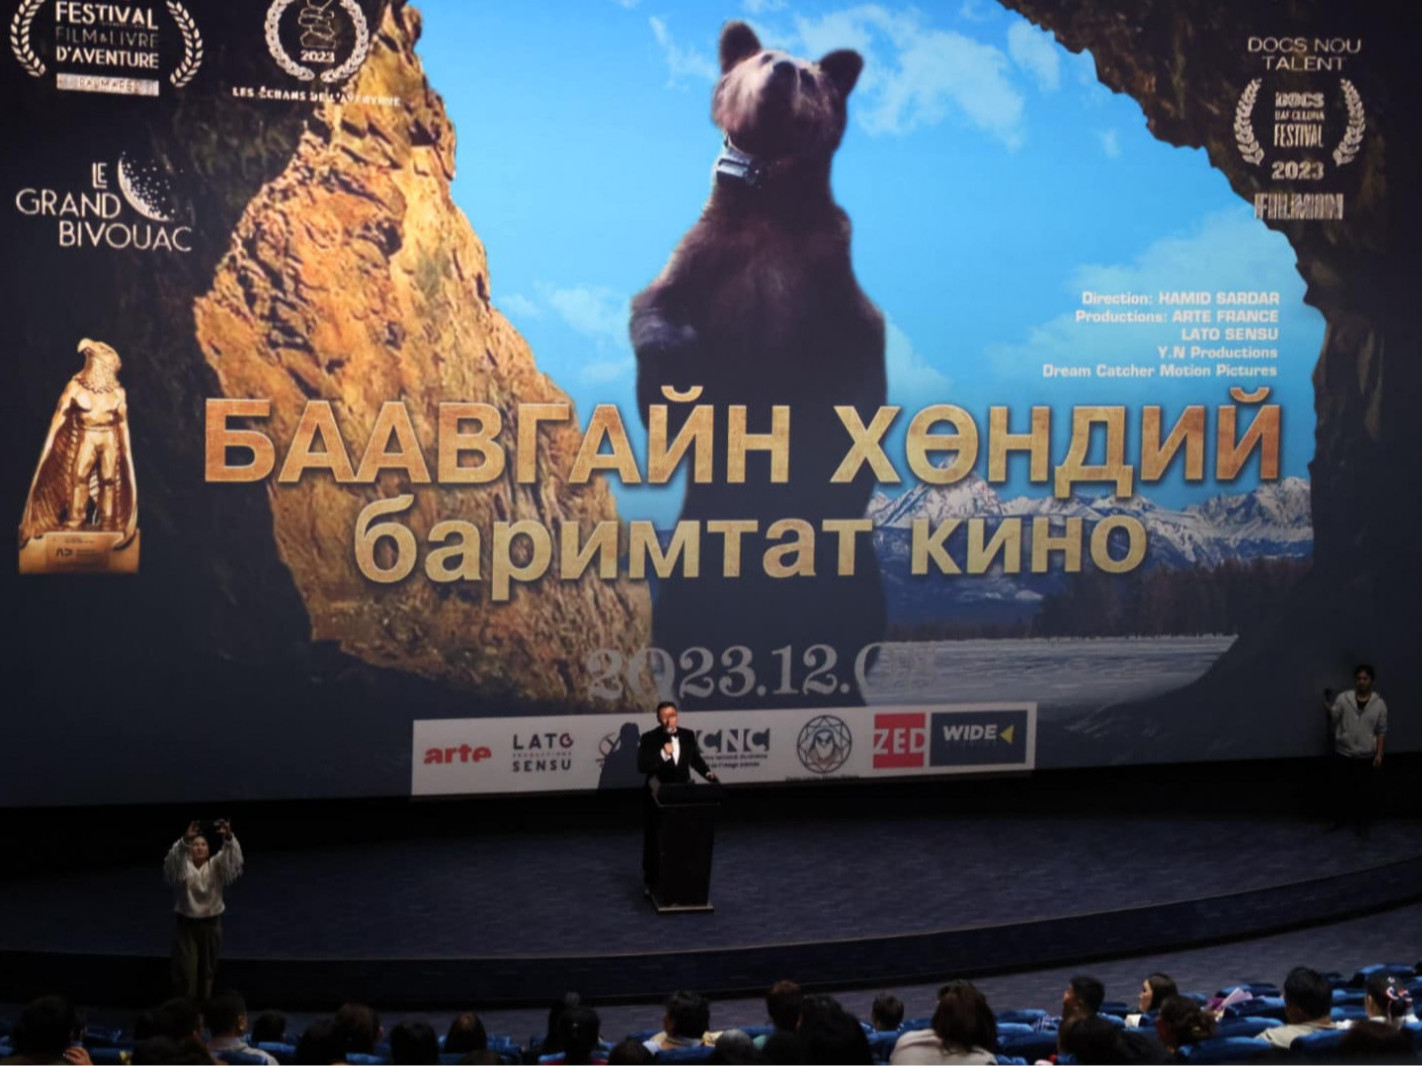 Байгаль хамгаалагч Ж.Төмөрсүхийн тухай өгүүлэх “Монгол-Баавгайн хөндий” кино Боловсрол телевизээр гарна 